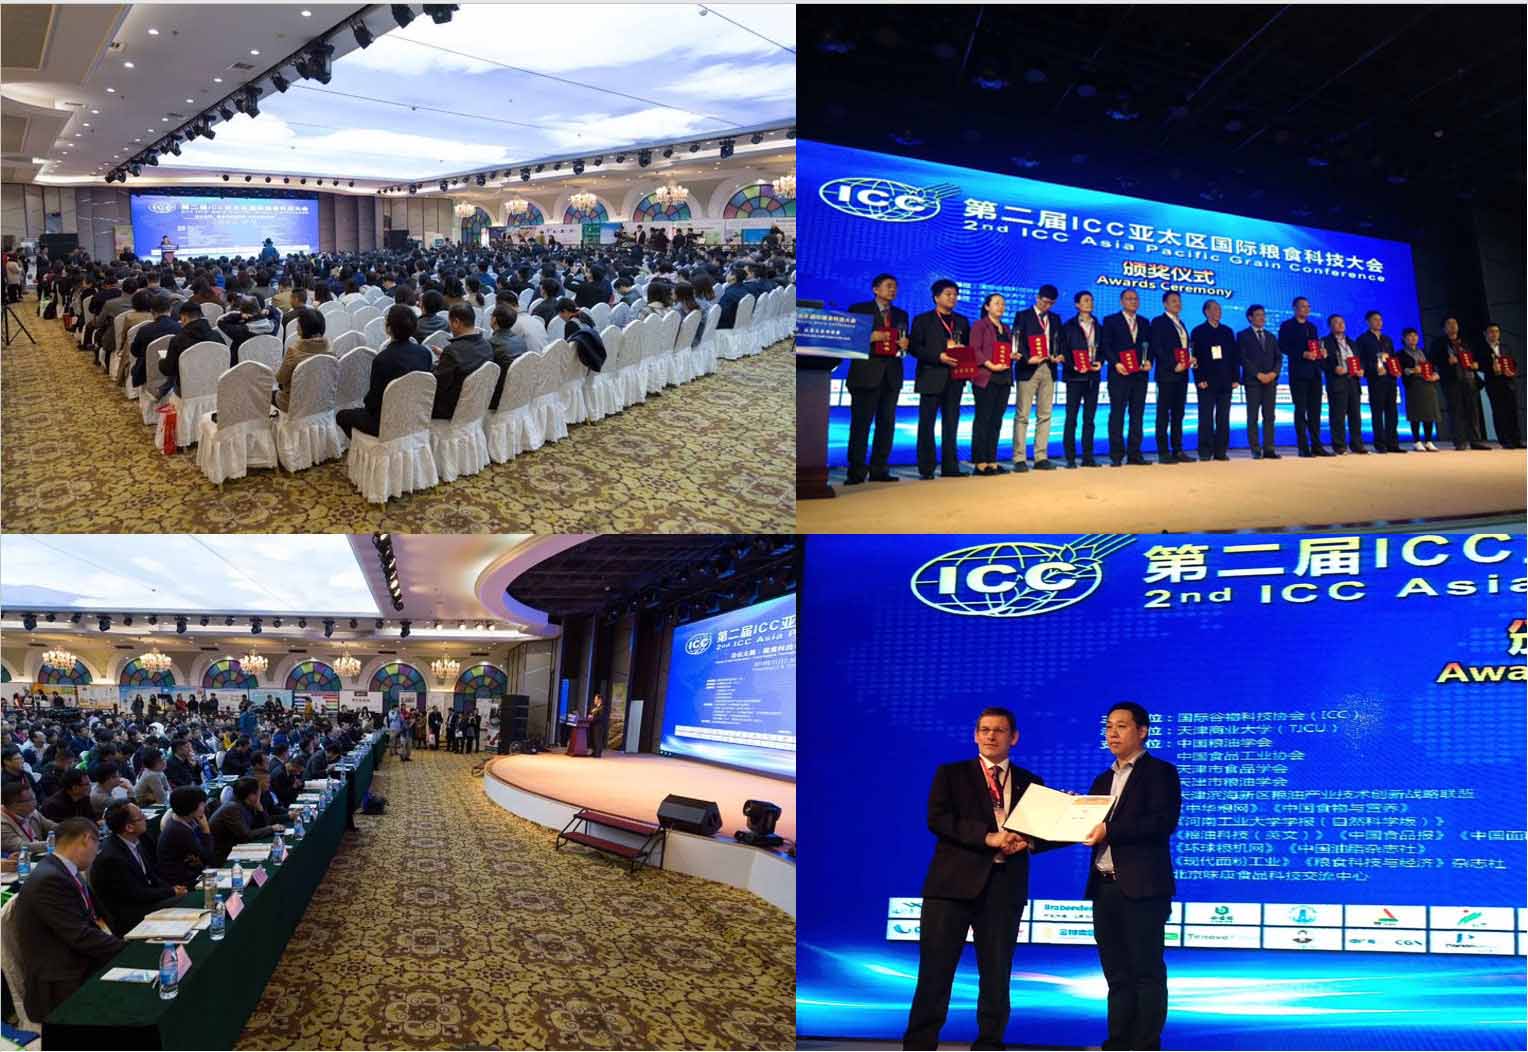 太阳成集团tyc9728助力第二届ICC亚太区国际粮食科技大会